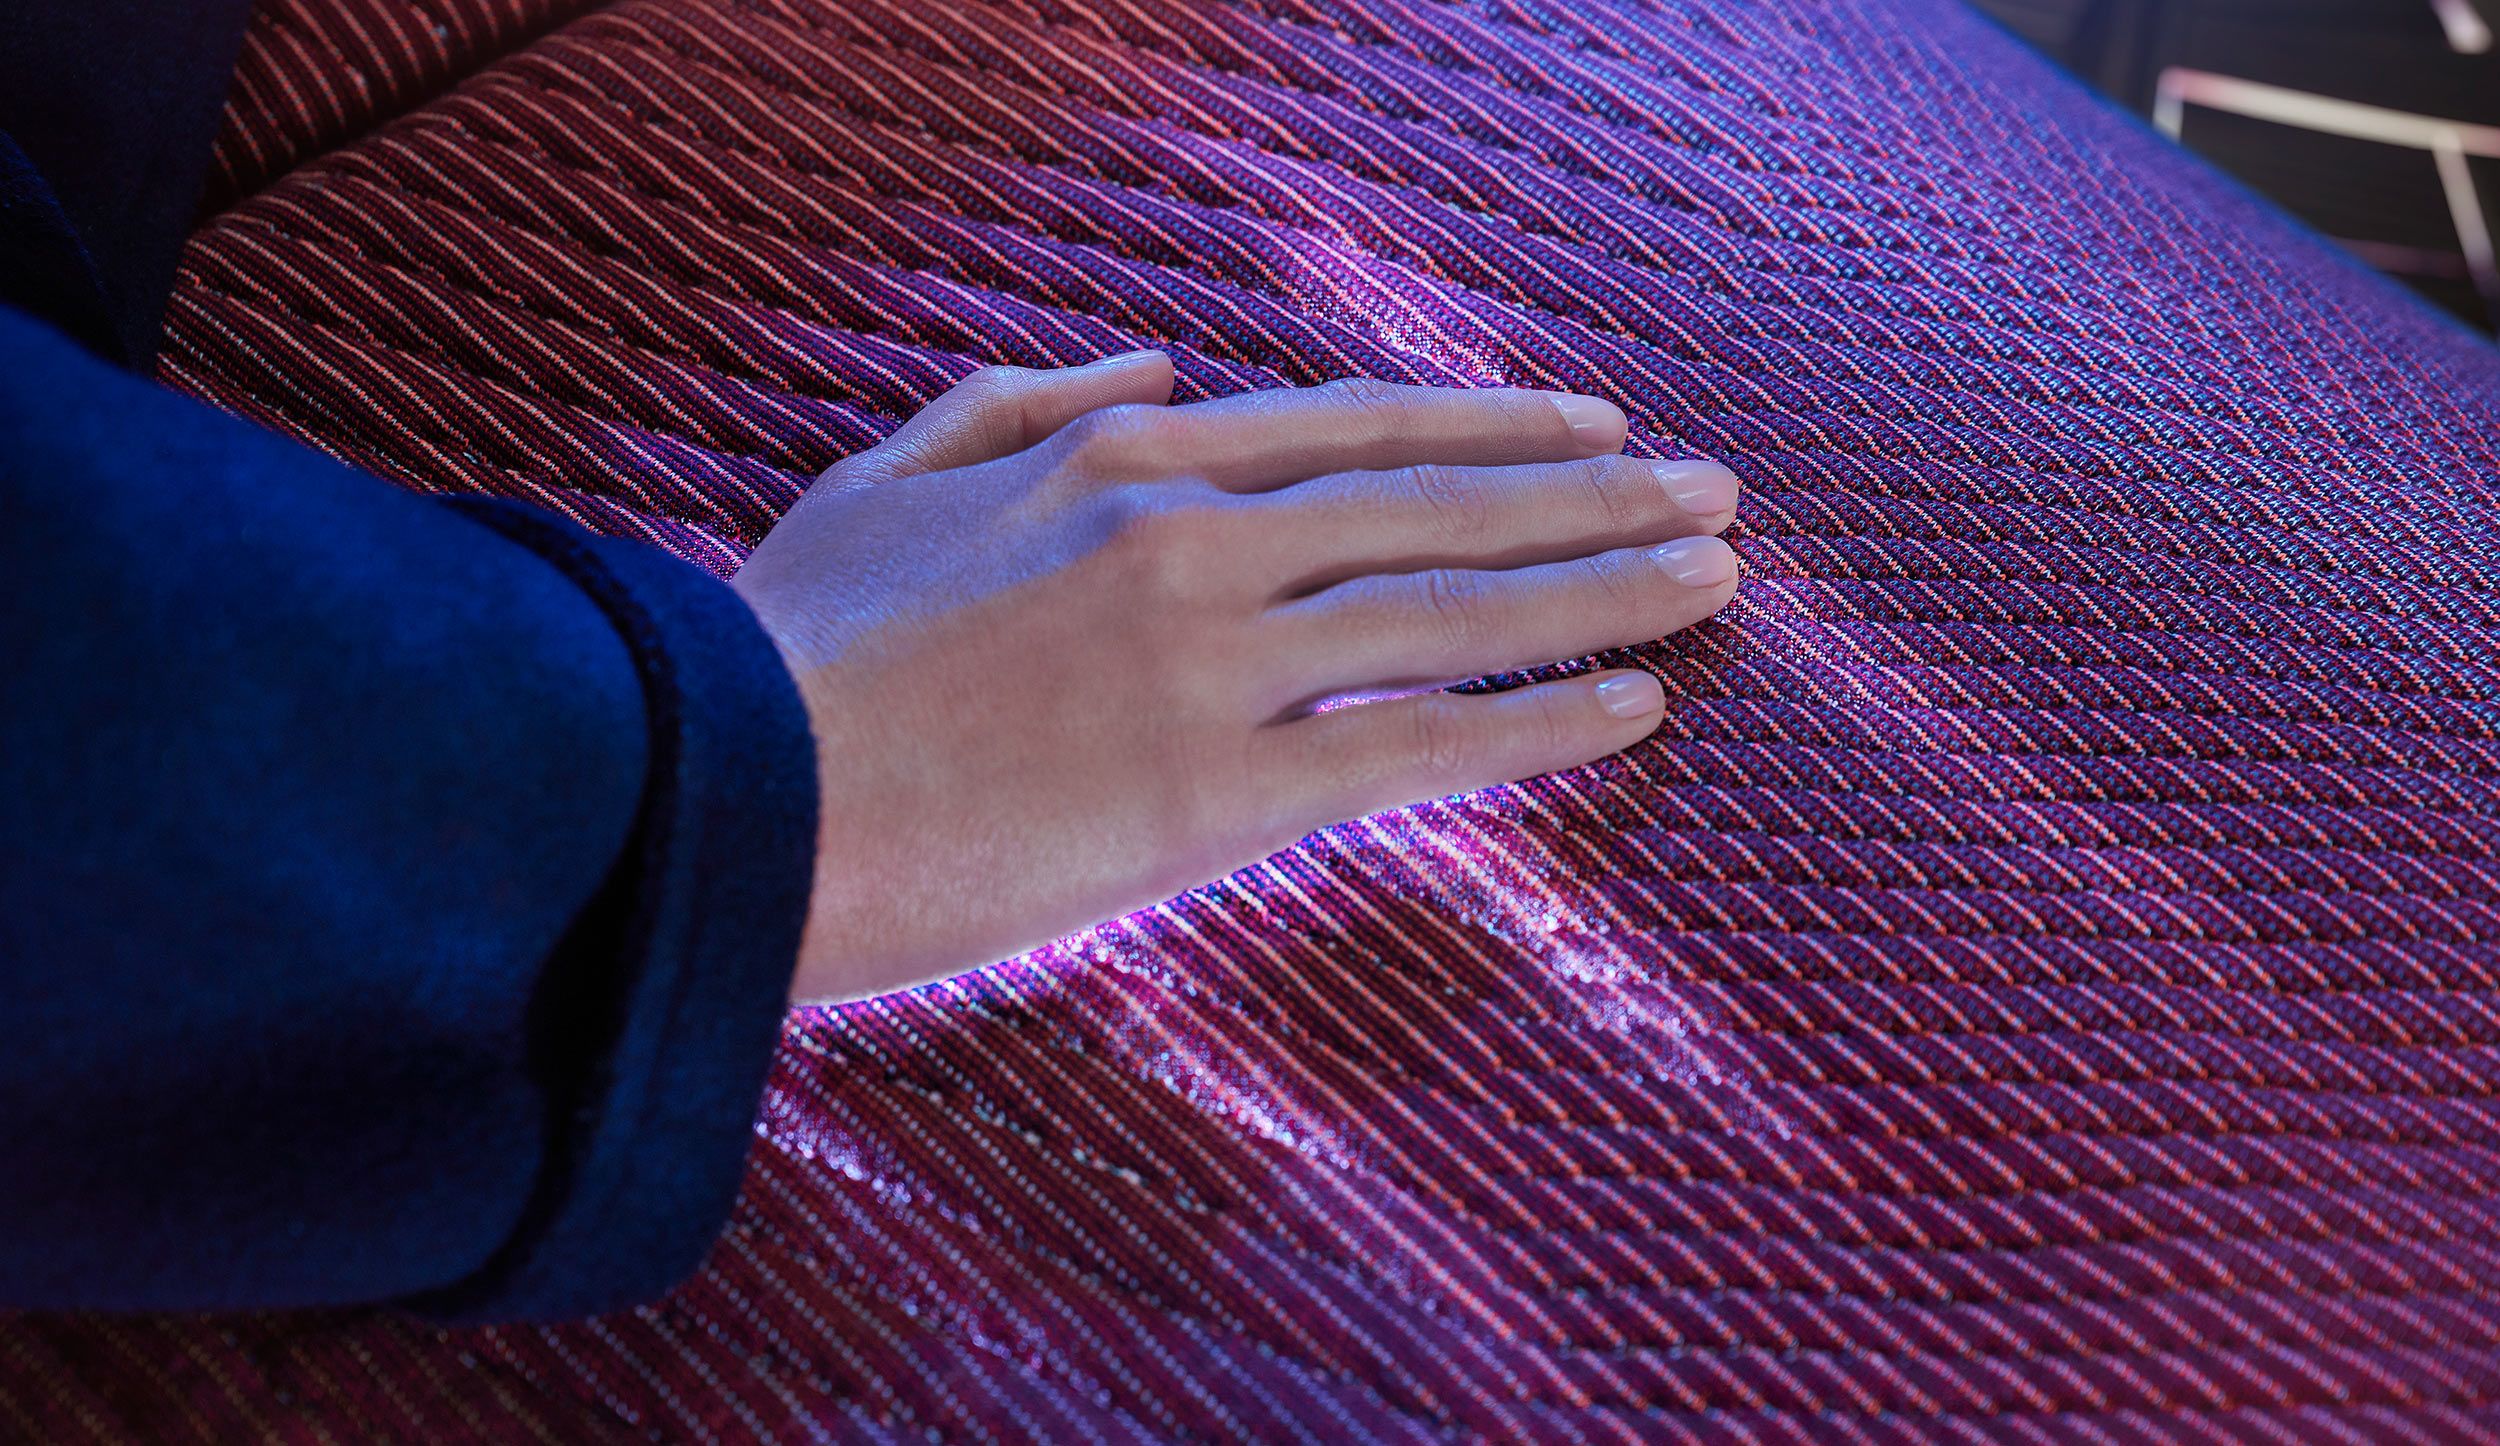 Interactive sufrace illuminating beneath hand.